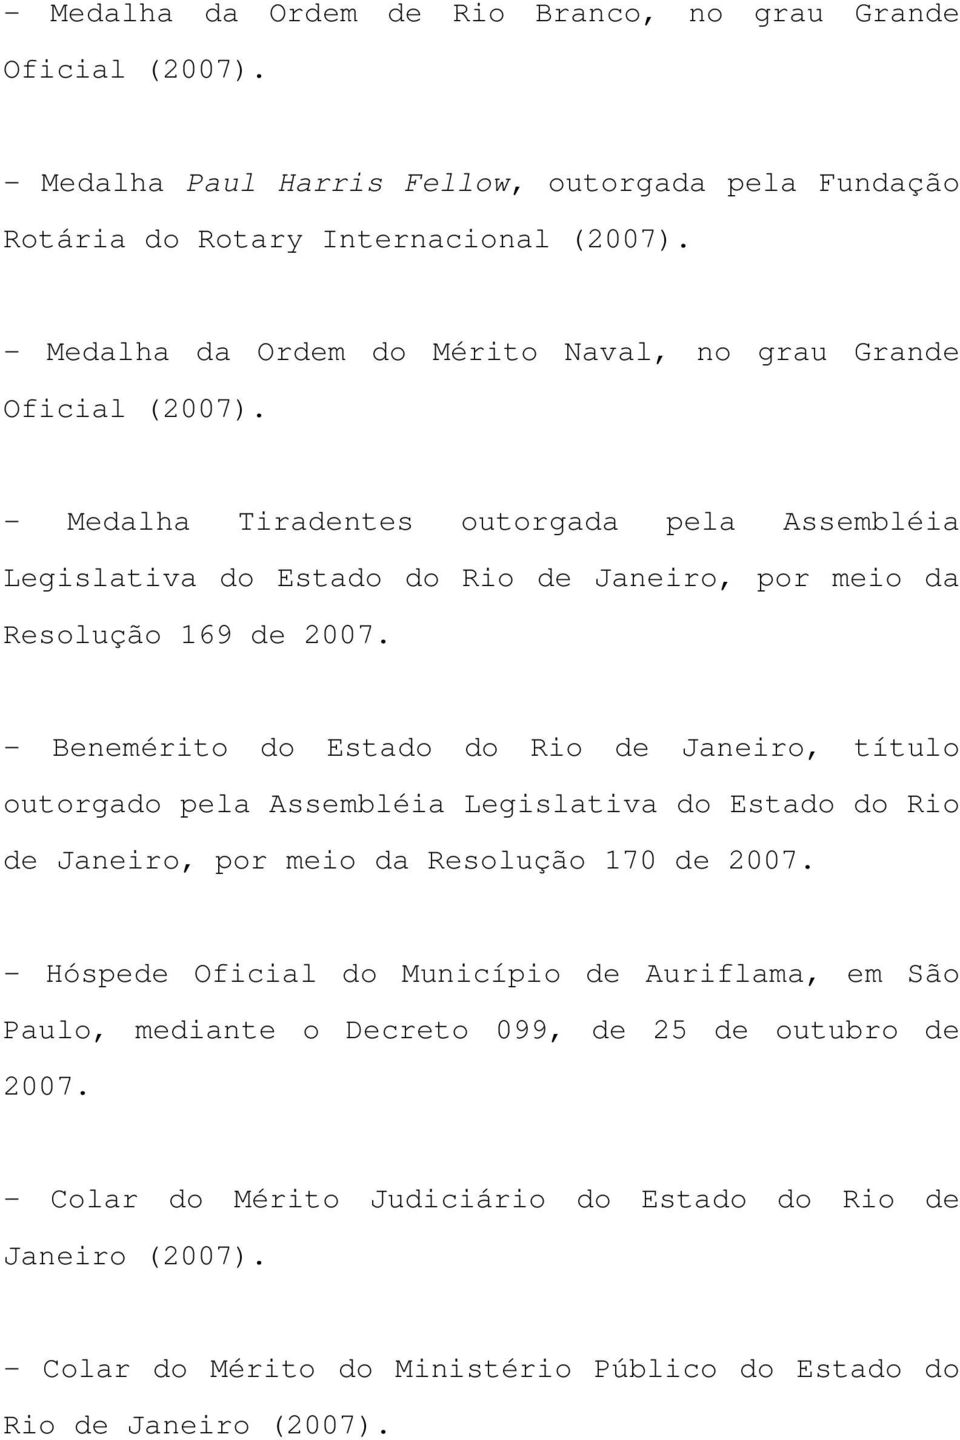 - Medalha Tiradentes outorgada pela Assembléia Legislativa do Estado do Rio de Janeiro, por meio da Resolução 169 de 2007.